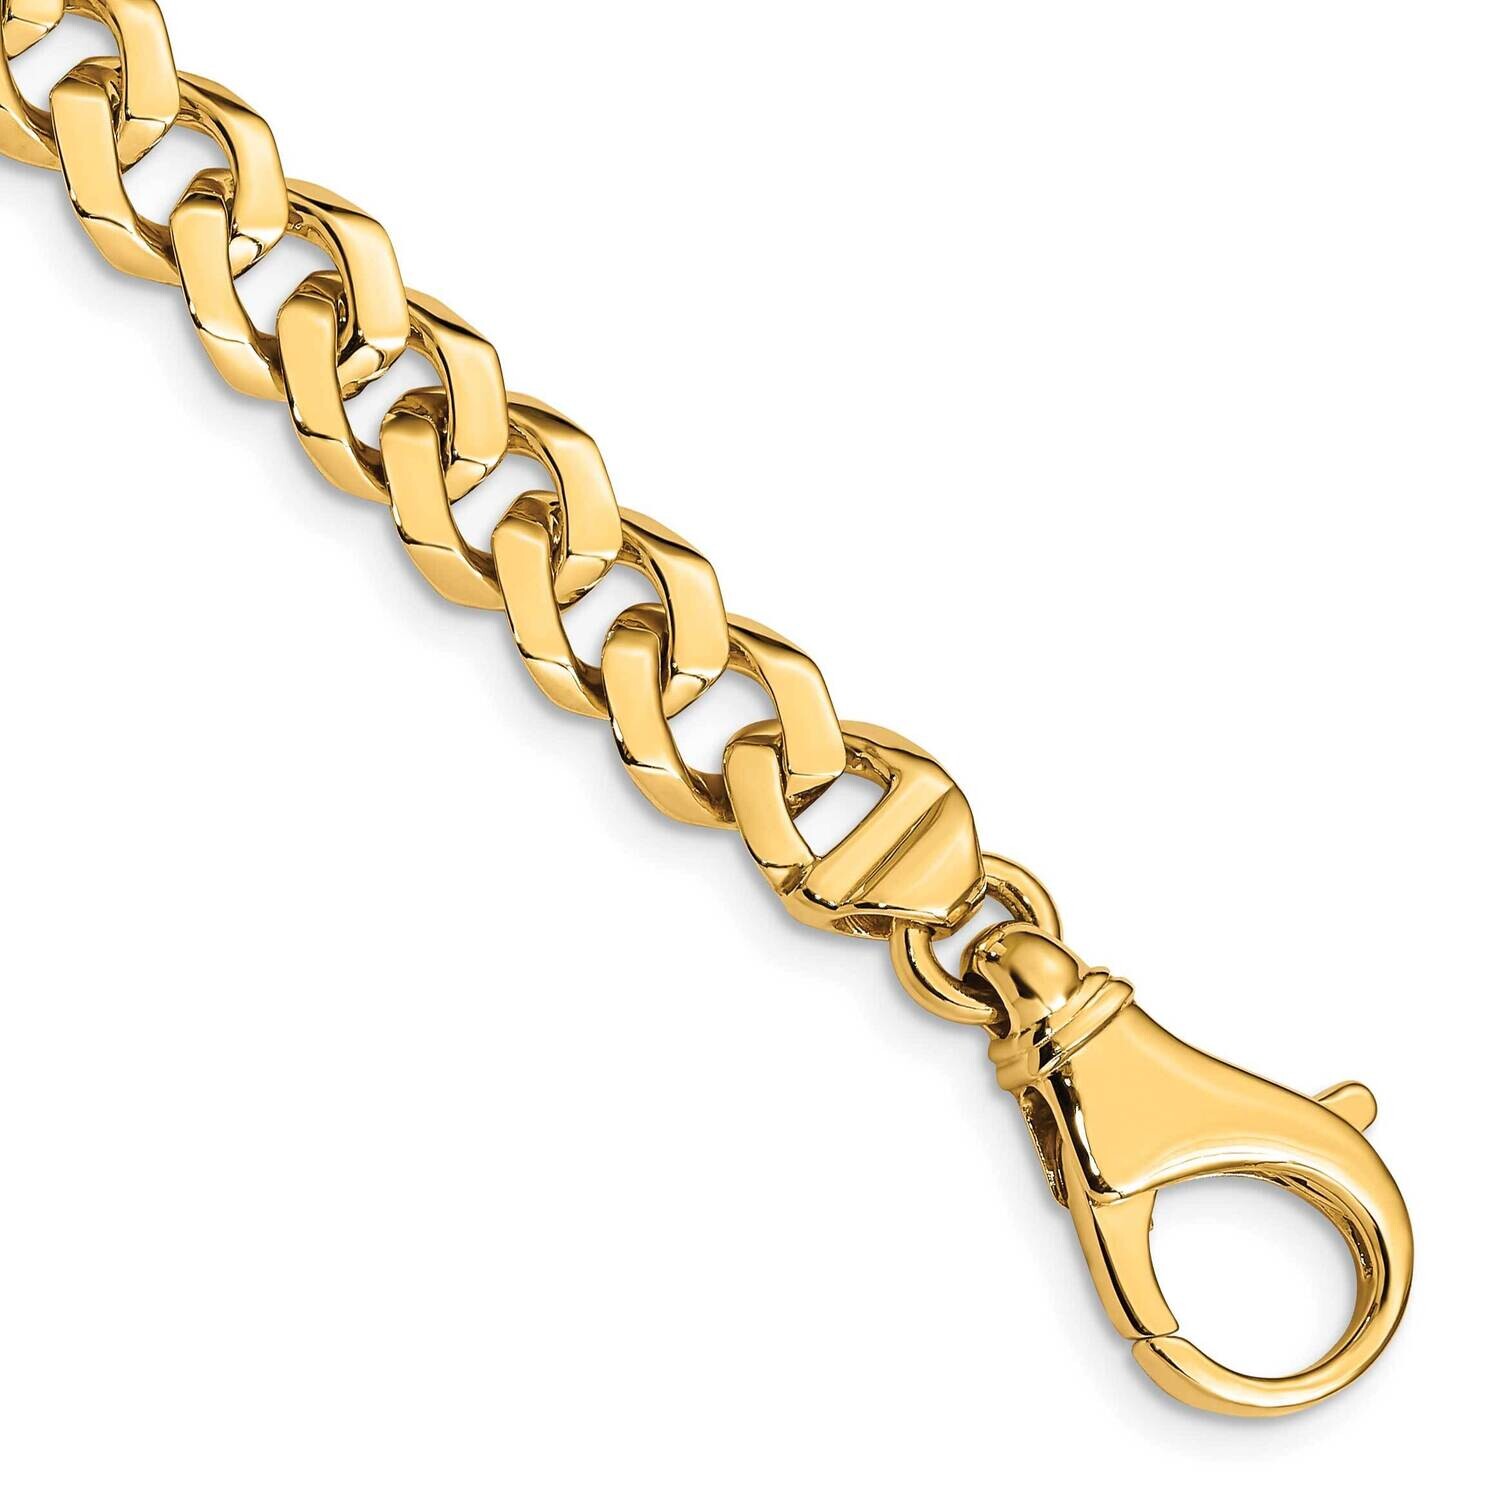 8mm Hand-Polished Fancy Link Bracelet 9 Inch 10k Gold 10LK157-9